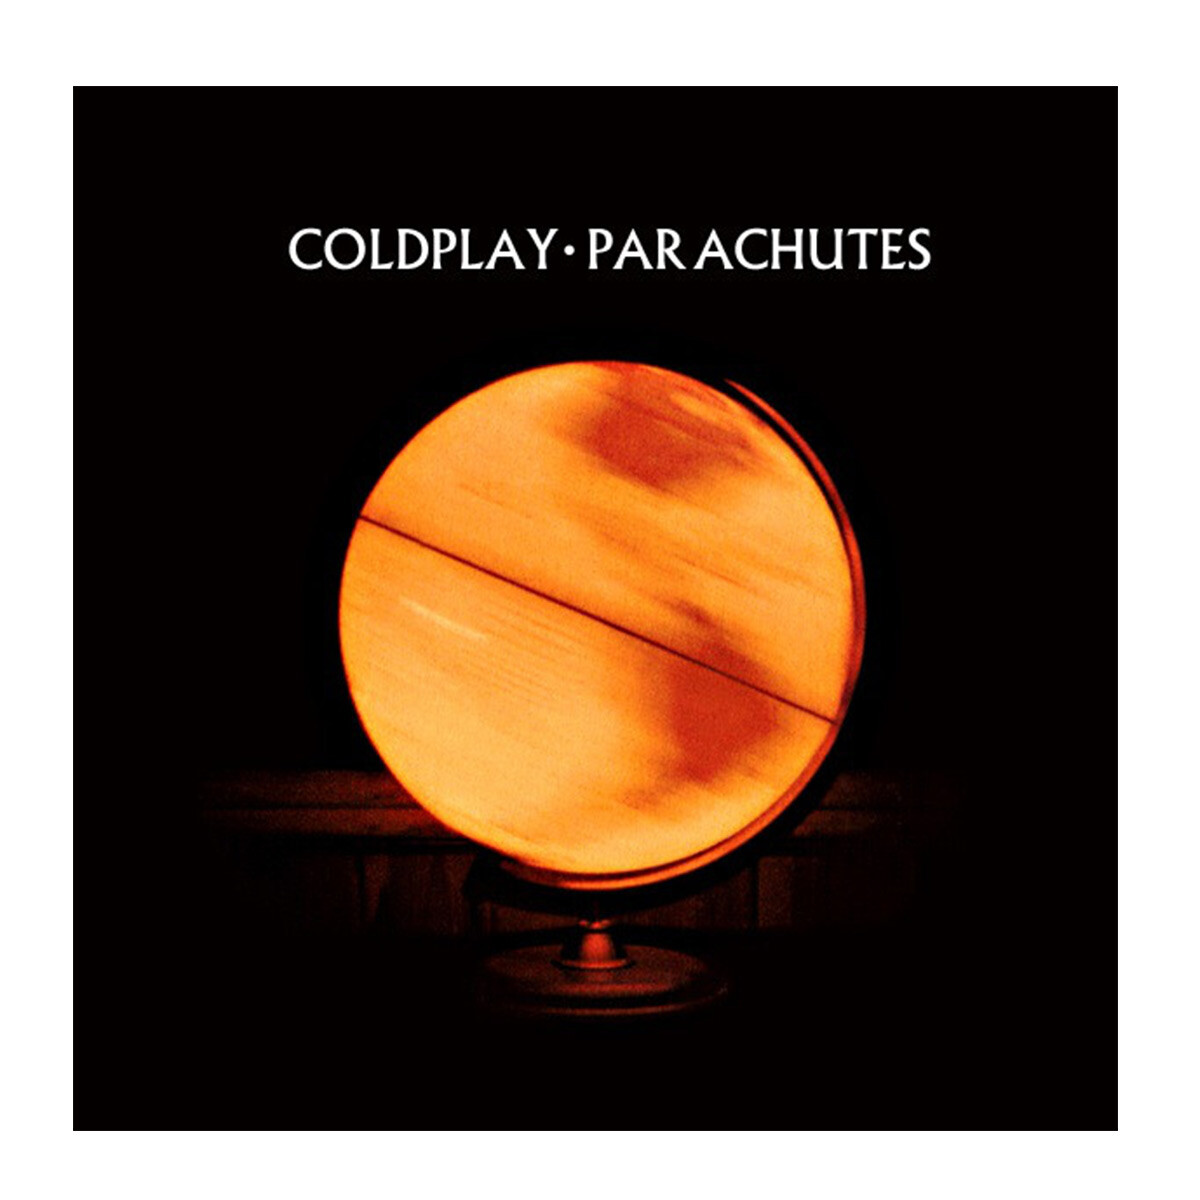 Coldplay-parachutes - Vinilo 